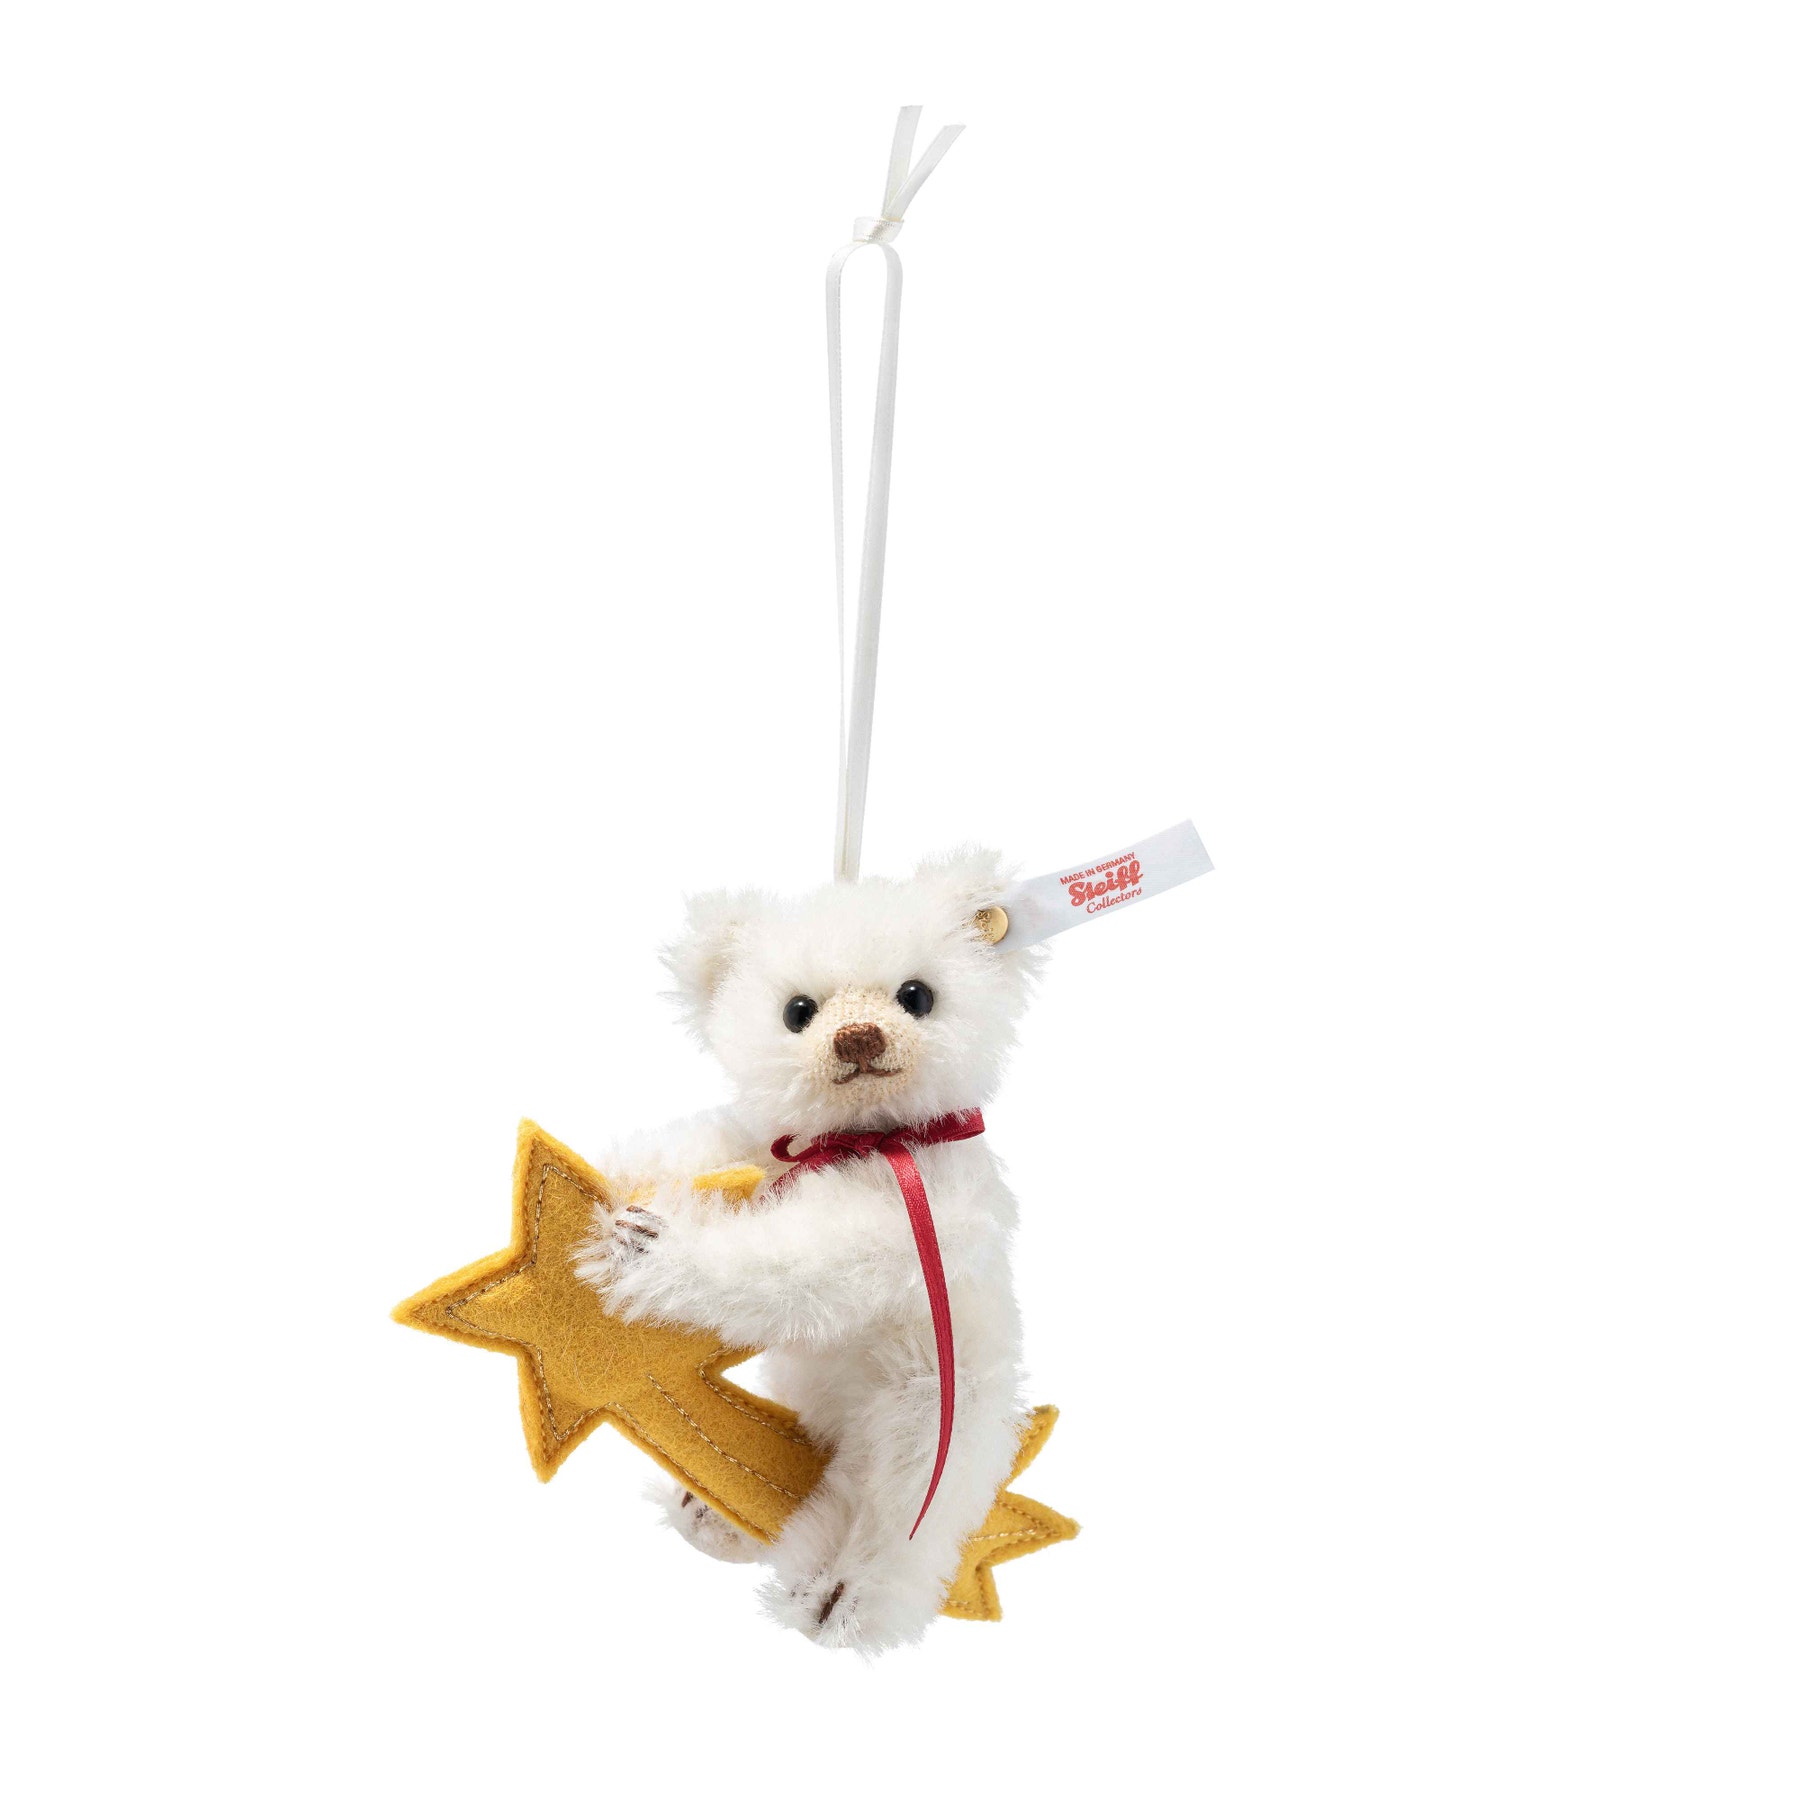 Teddy bear ornament on shooting star